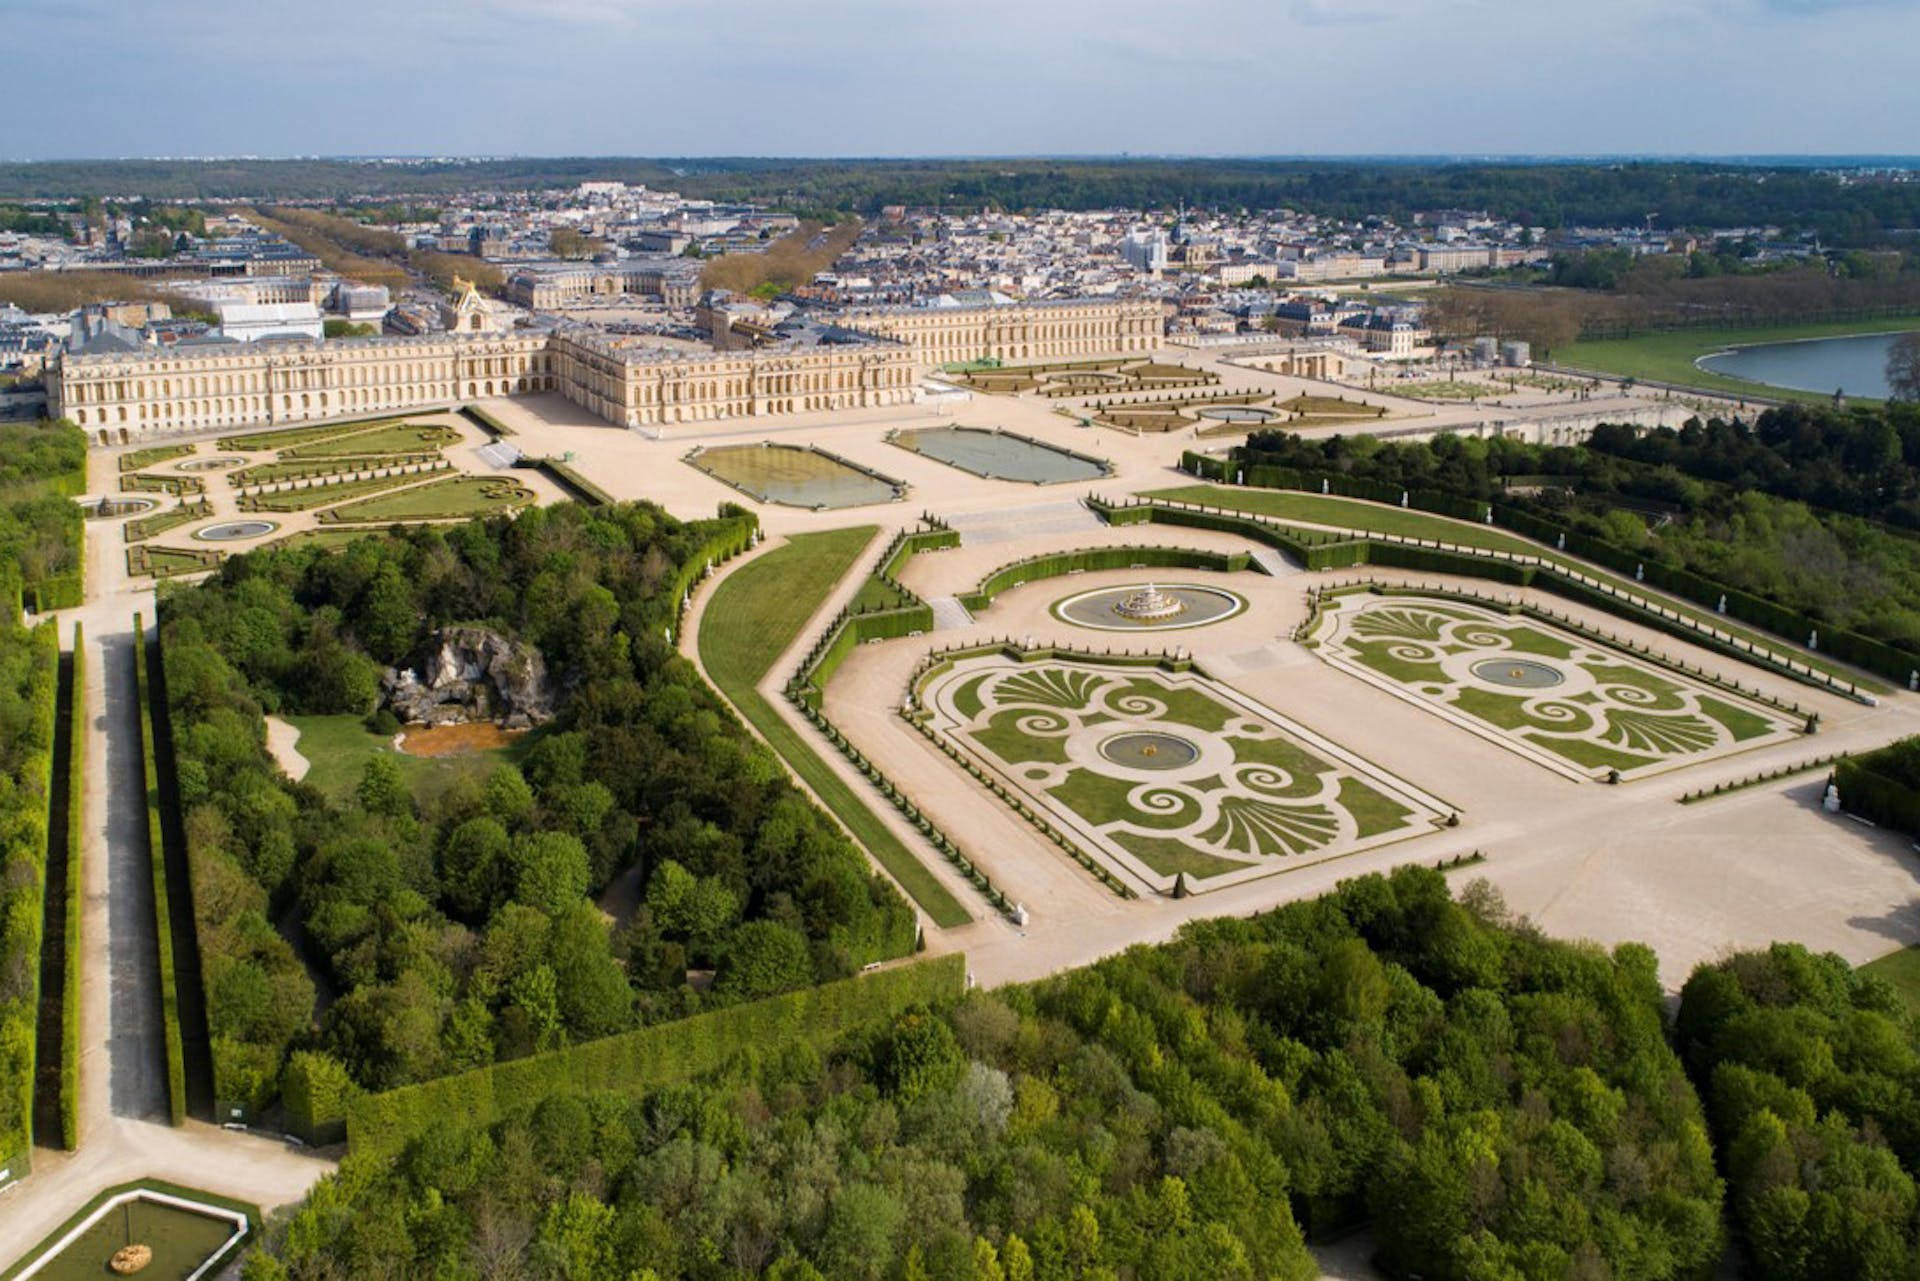 Vistapanorâmica De Toda A Área Do Palácio De Versalhes. Papel de Parede